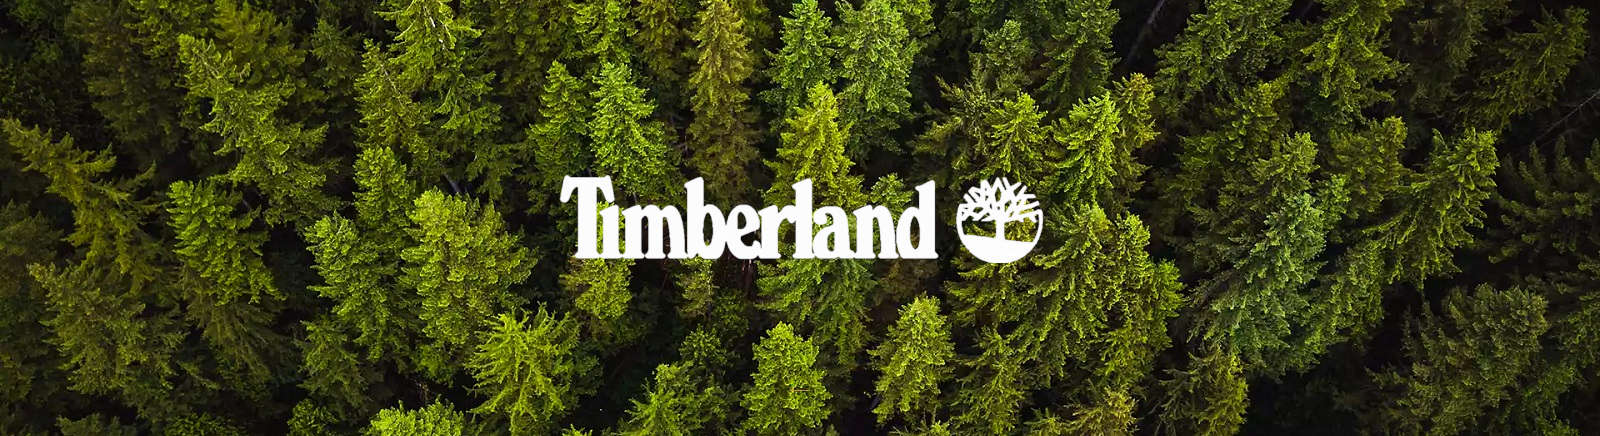 Timberland Herrenschuhe online entdecken im Juppen Shop